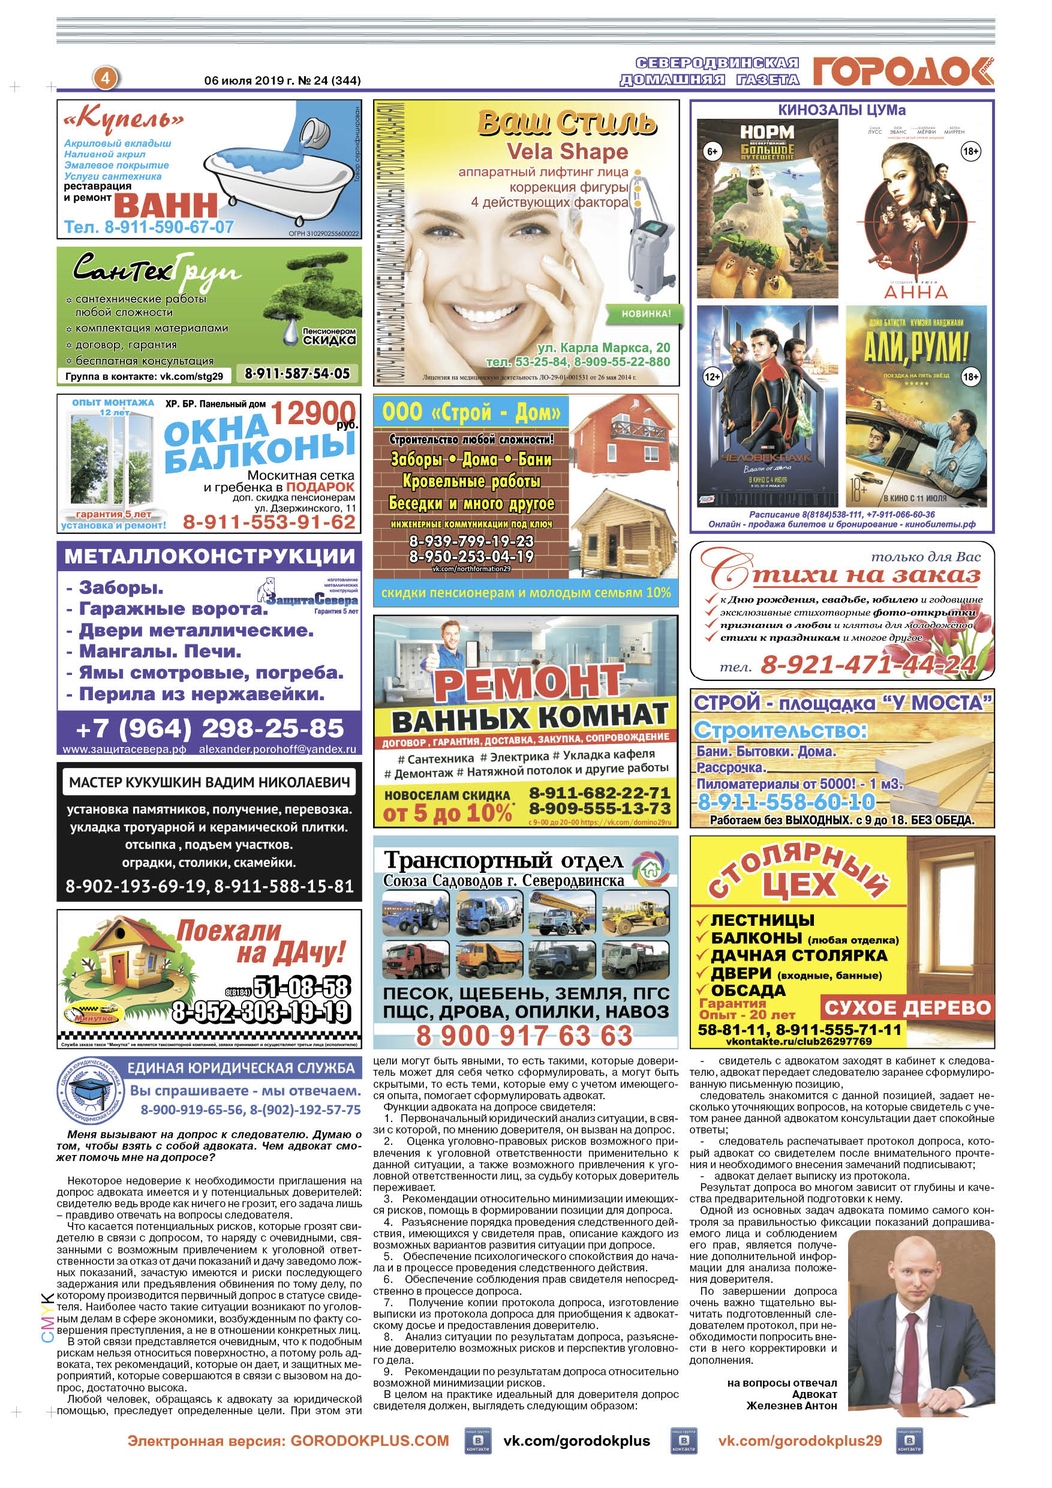 Городок плюс, выпуск номер 24 от 08 июля 2019 года, страница 4.